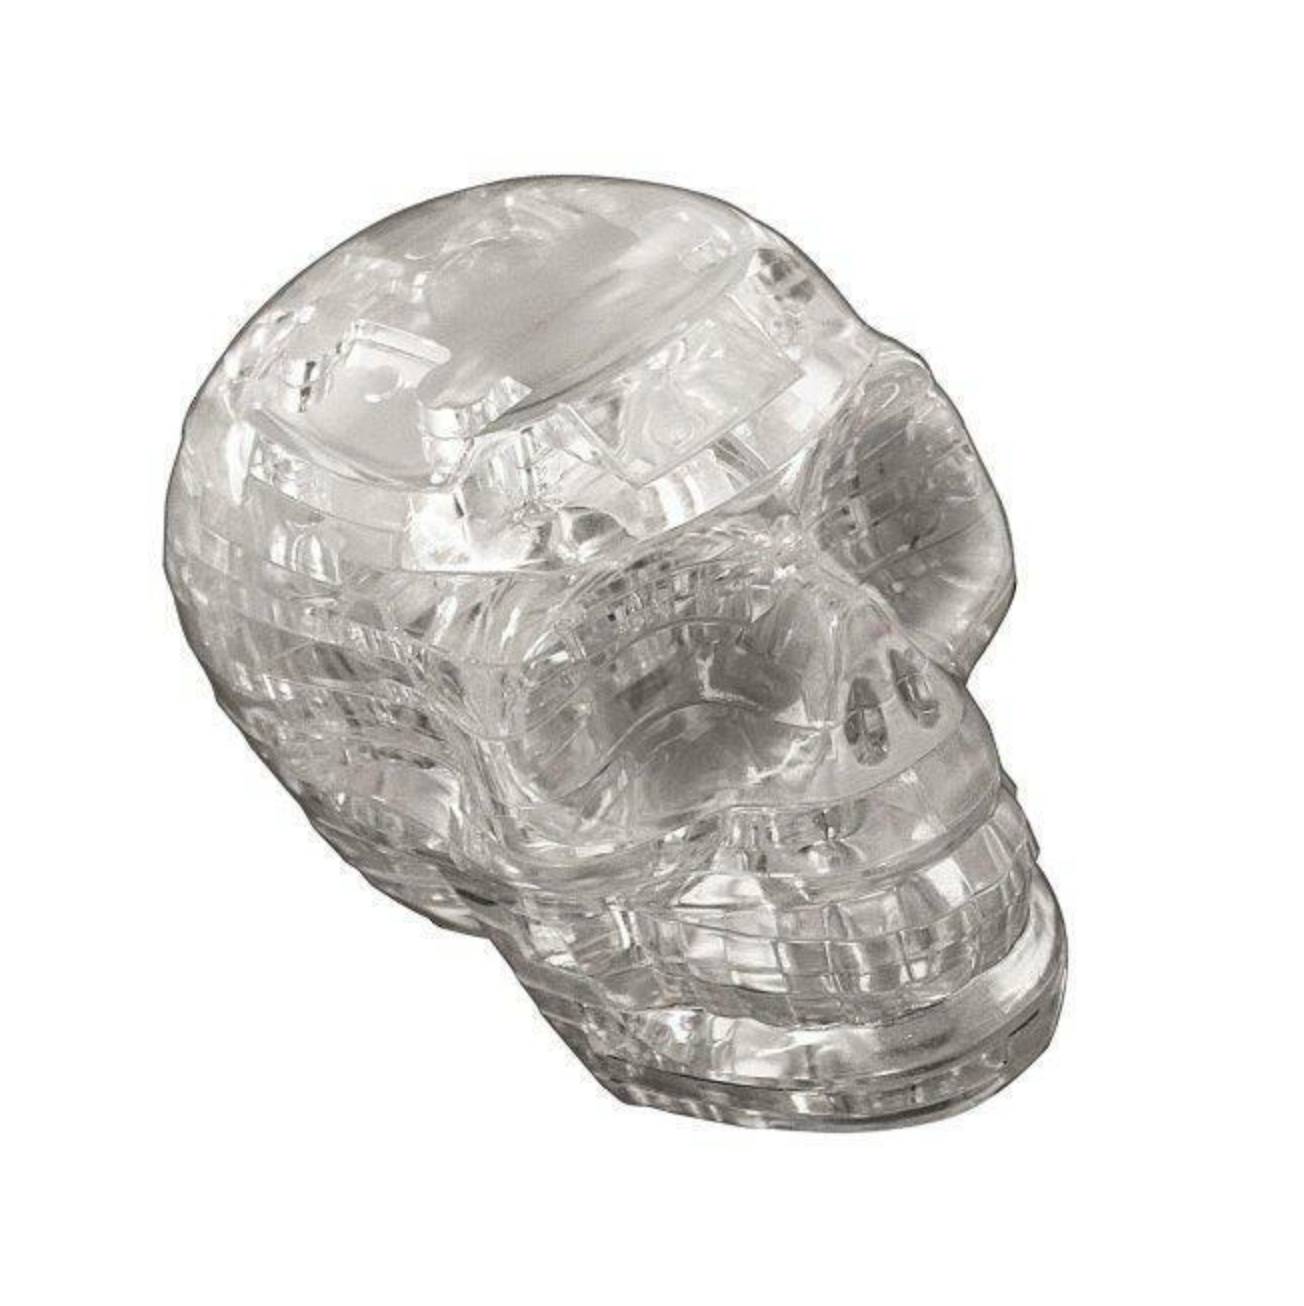 Skull puzzle game - clear quartz